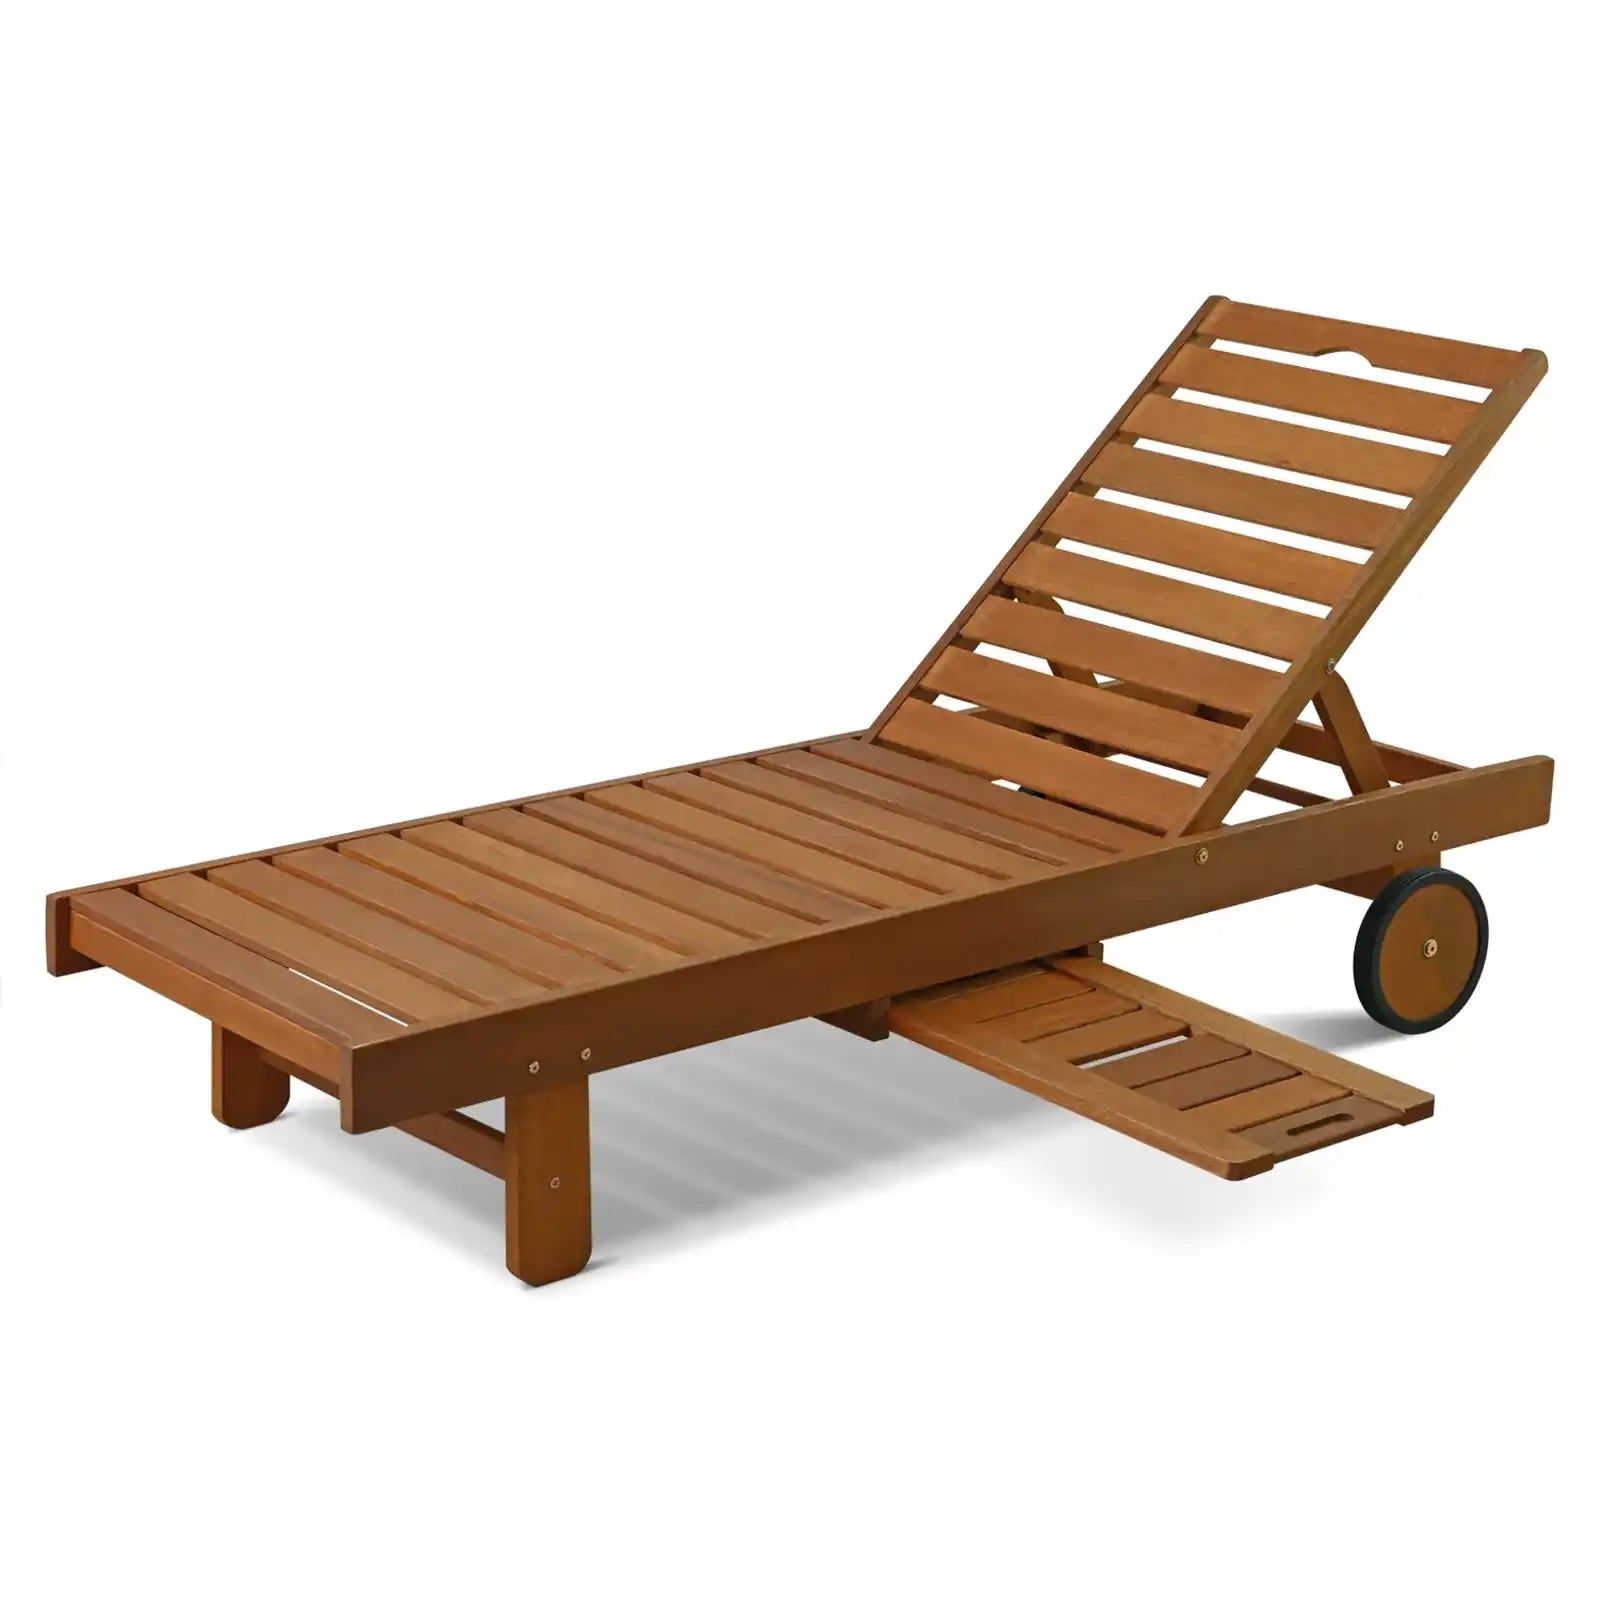 Chaise lounge al aire libre de madera dura 